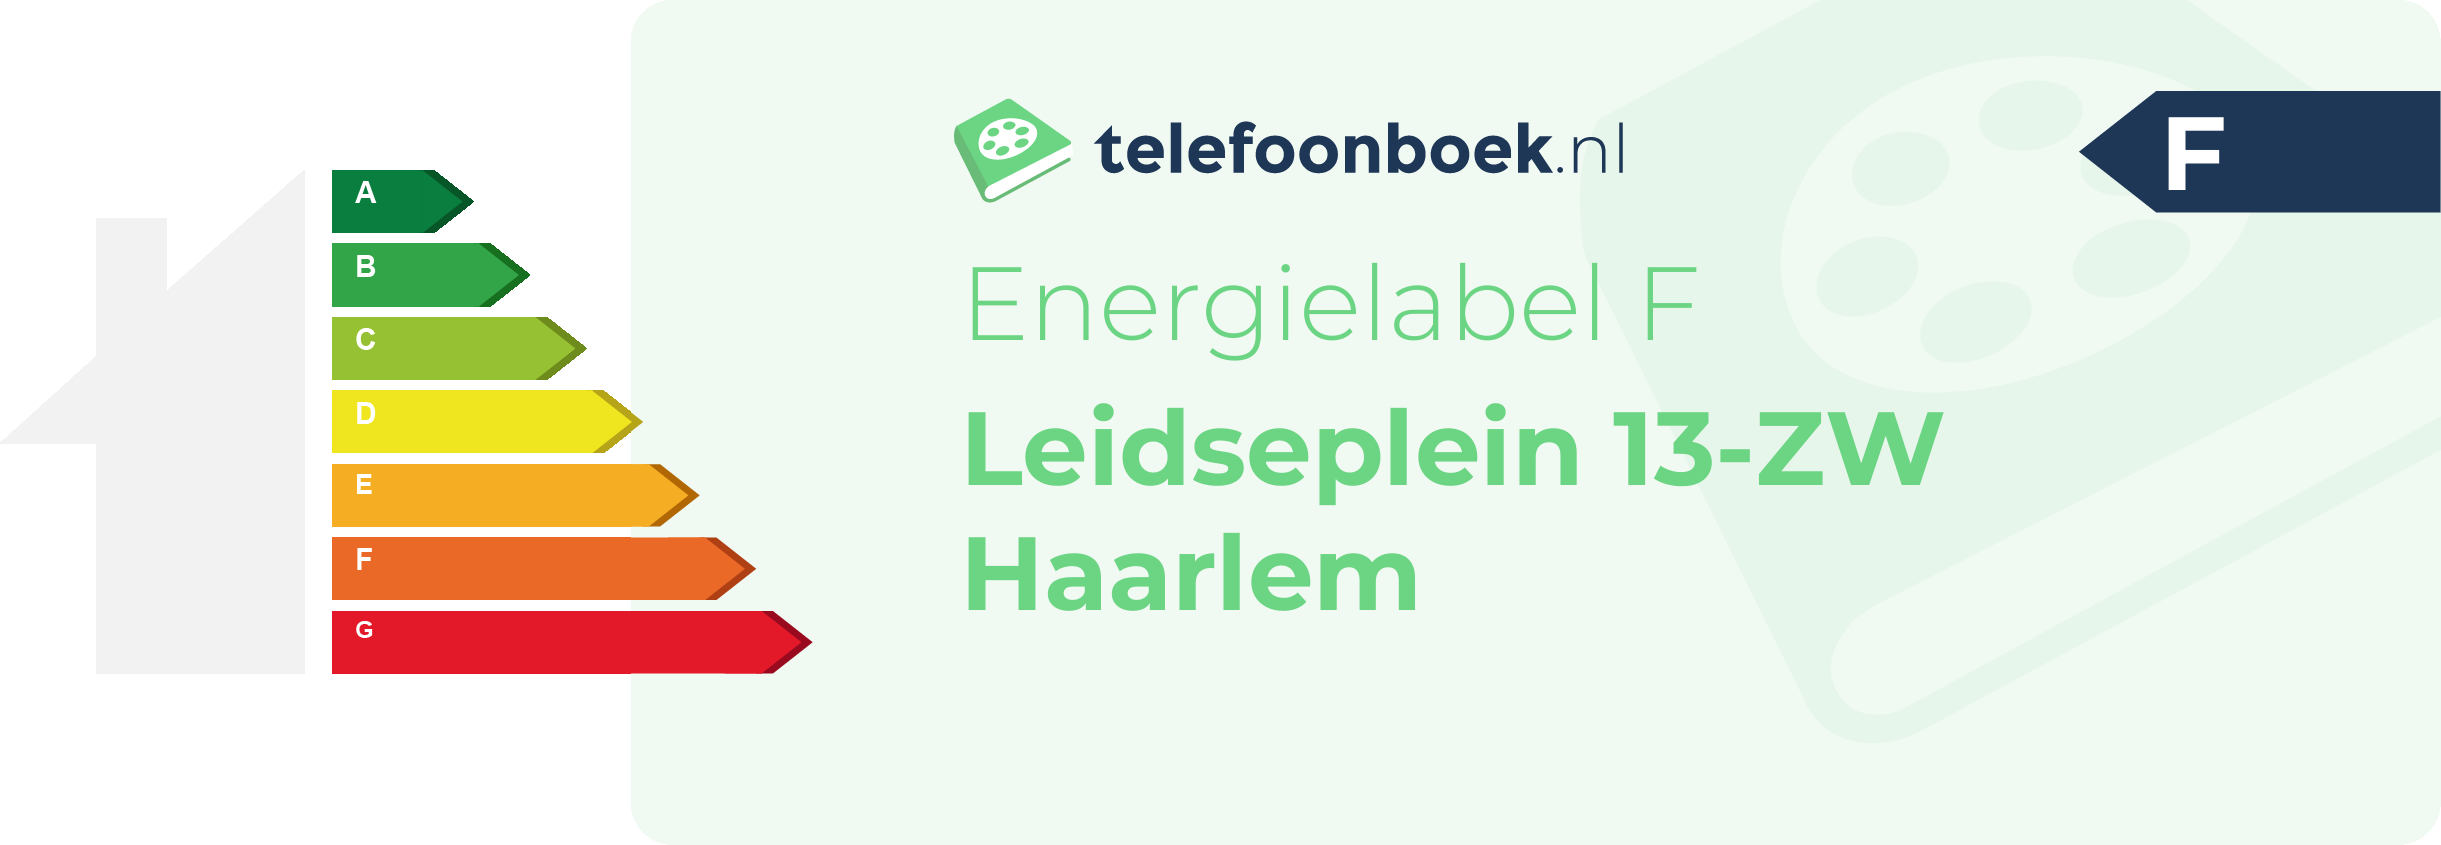 Energielabel Leidseplein 13-ZW Haarlem